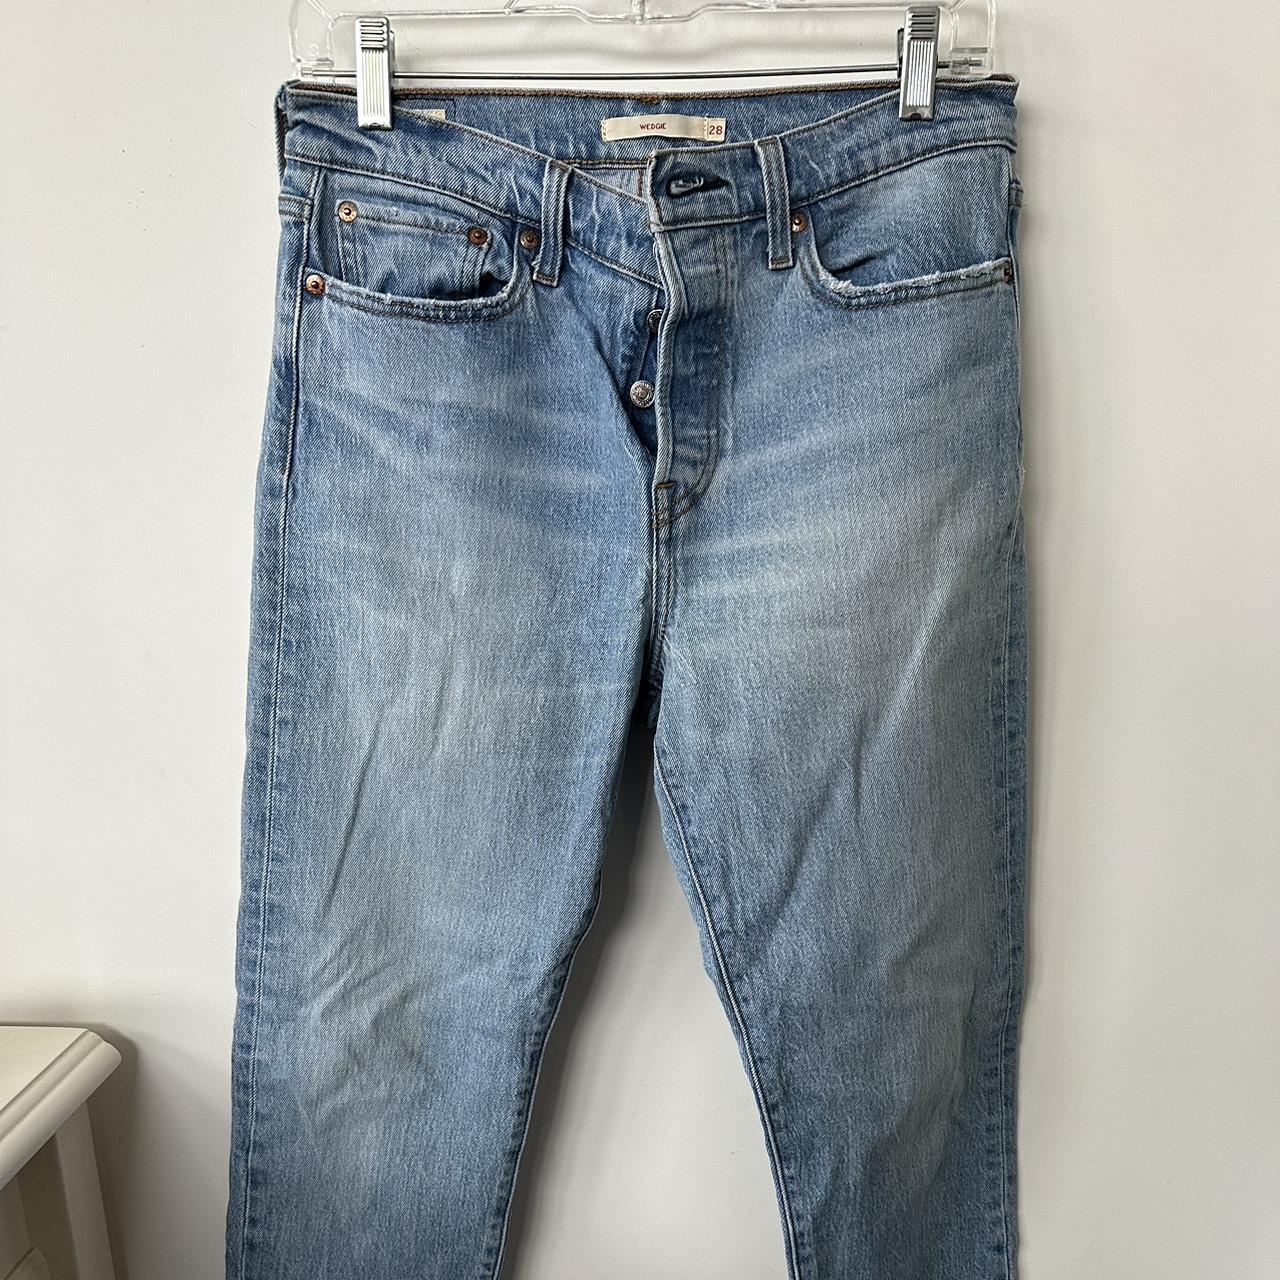 Wedgie Straight Women's Jeans - Medium Wash